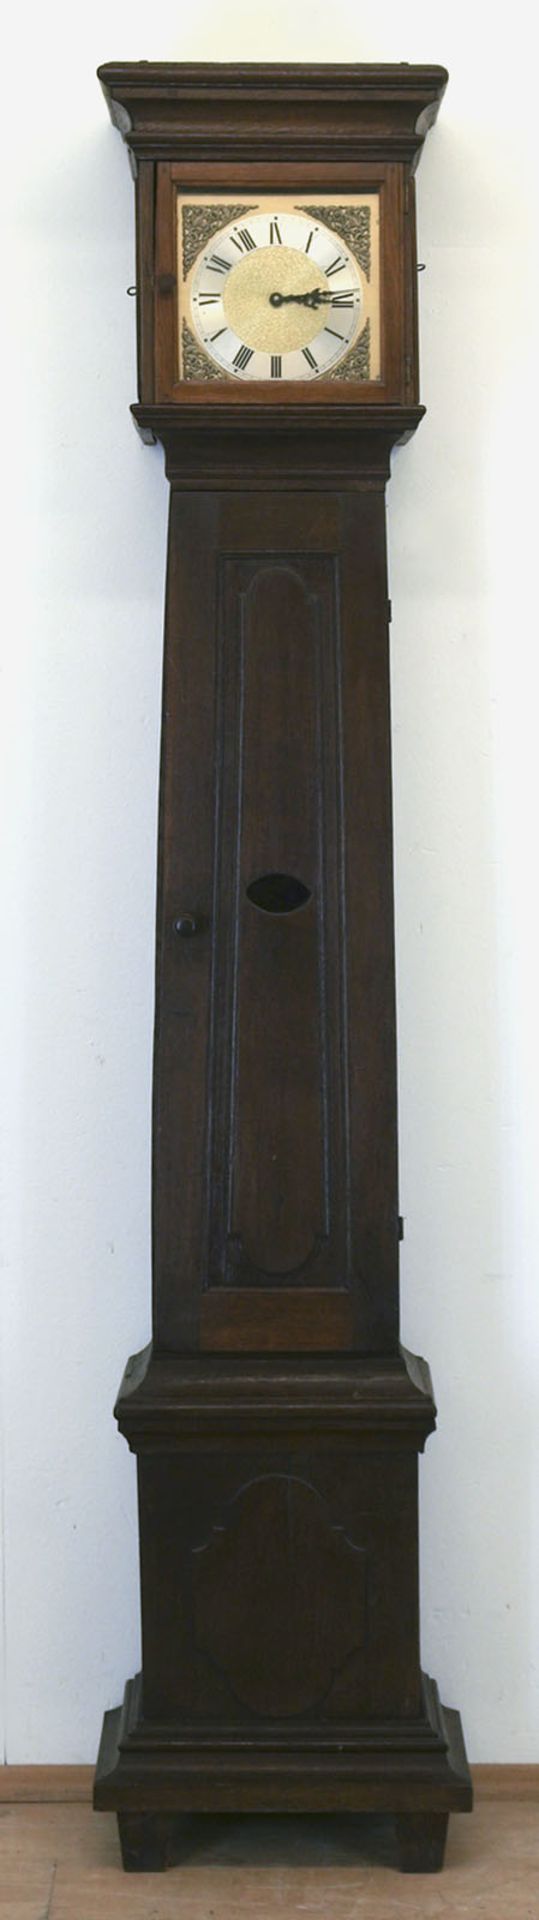 Standuhrgehäuse, um 1800, Eiche, Gebrauchspuren, Quarzwerk 213x46x27 cm